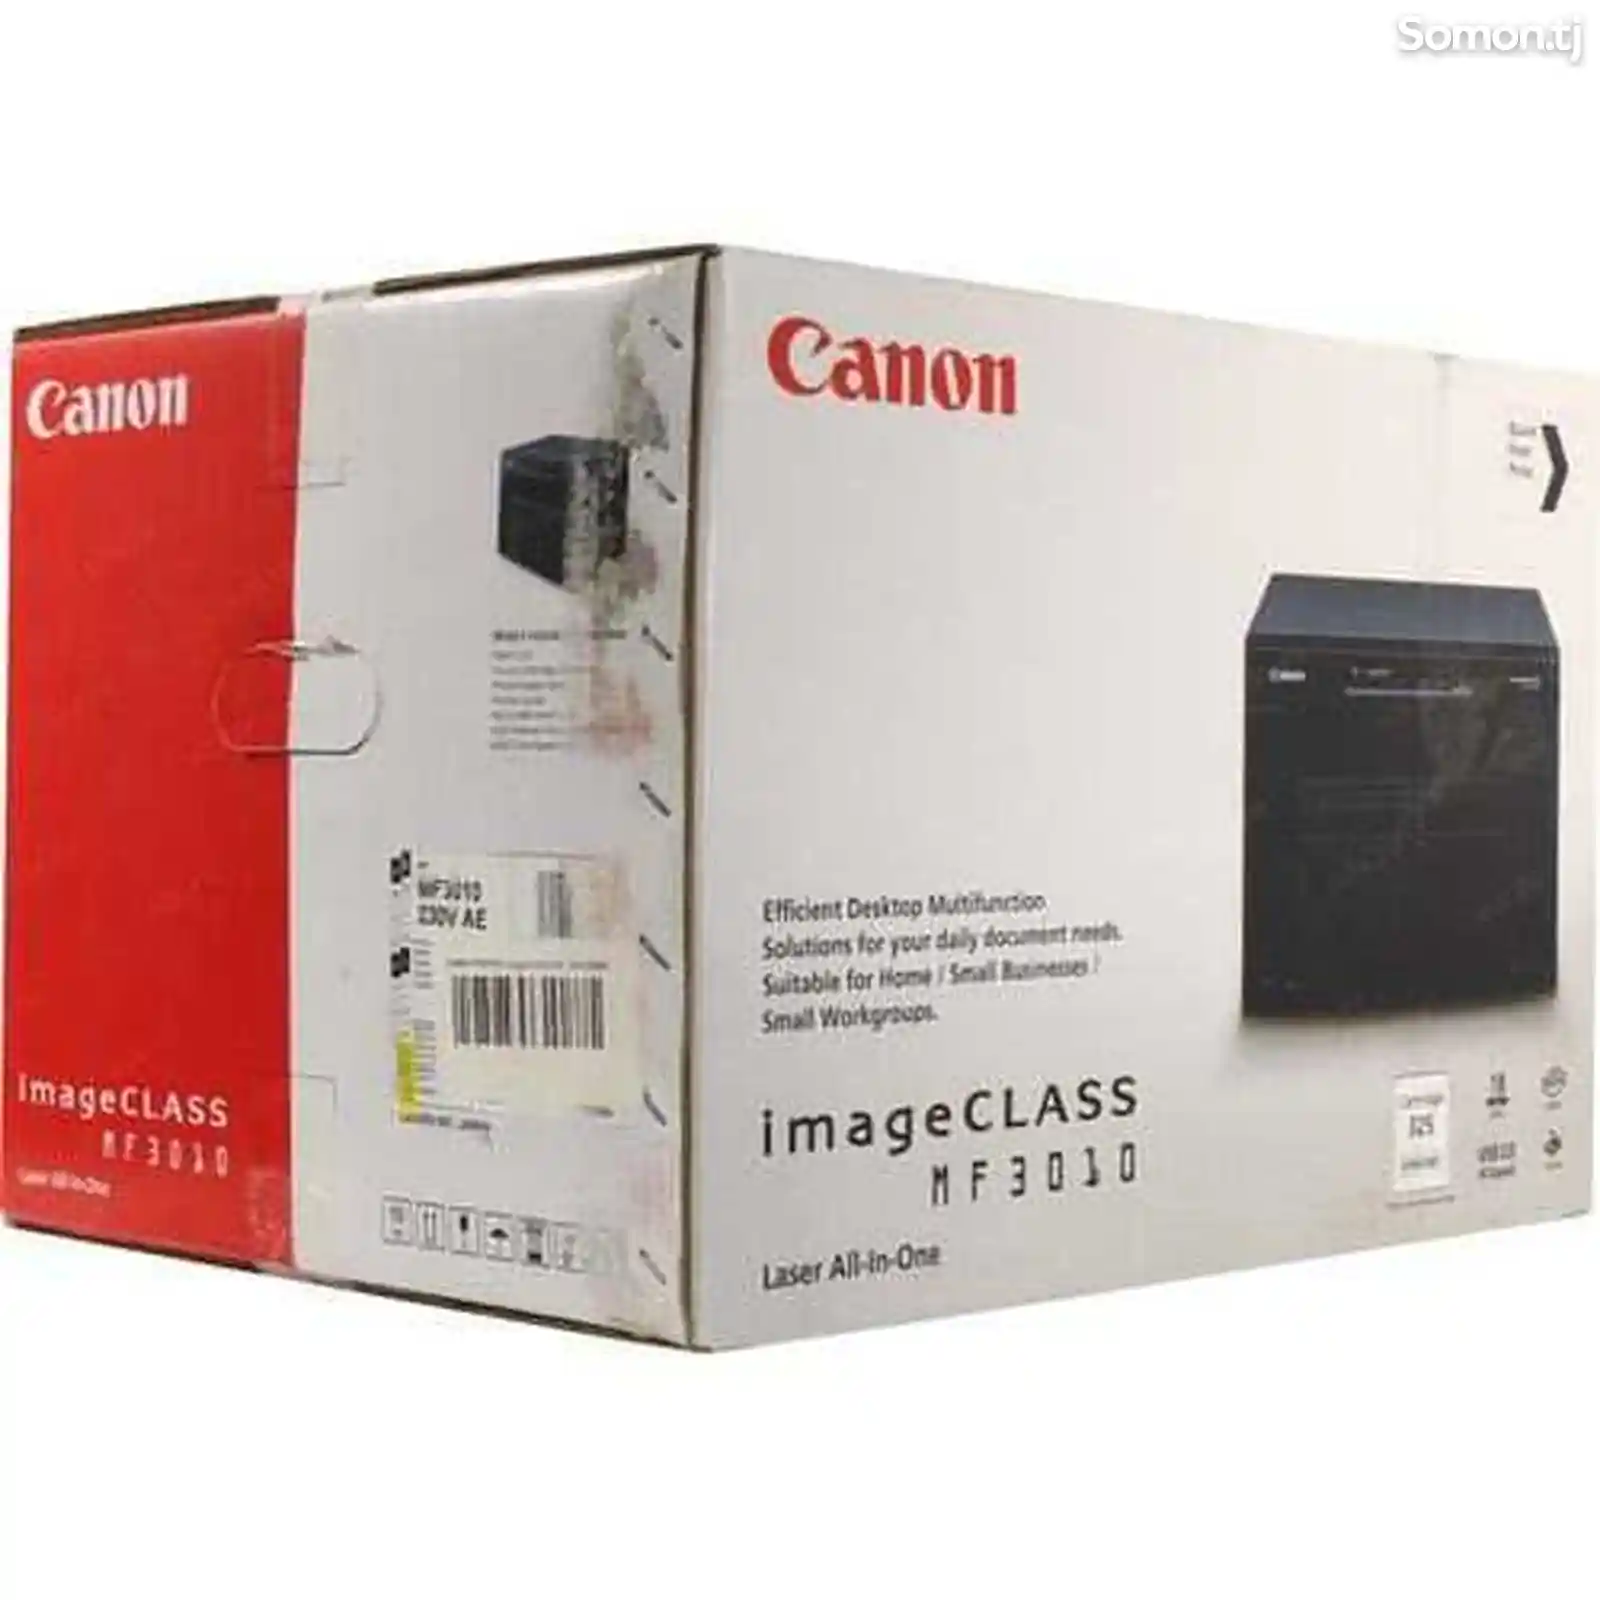 Принтер Canon 3010 image class-3